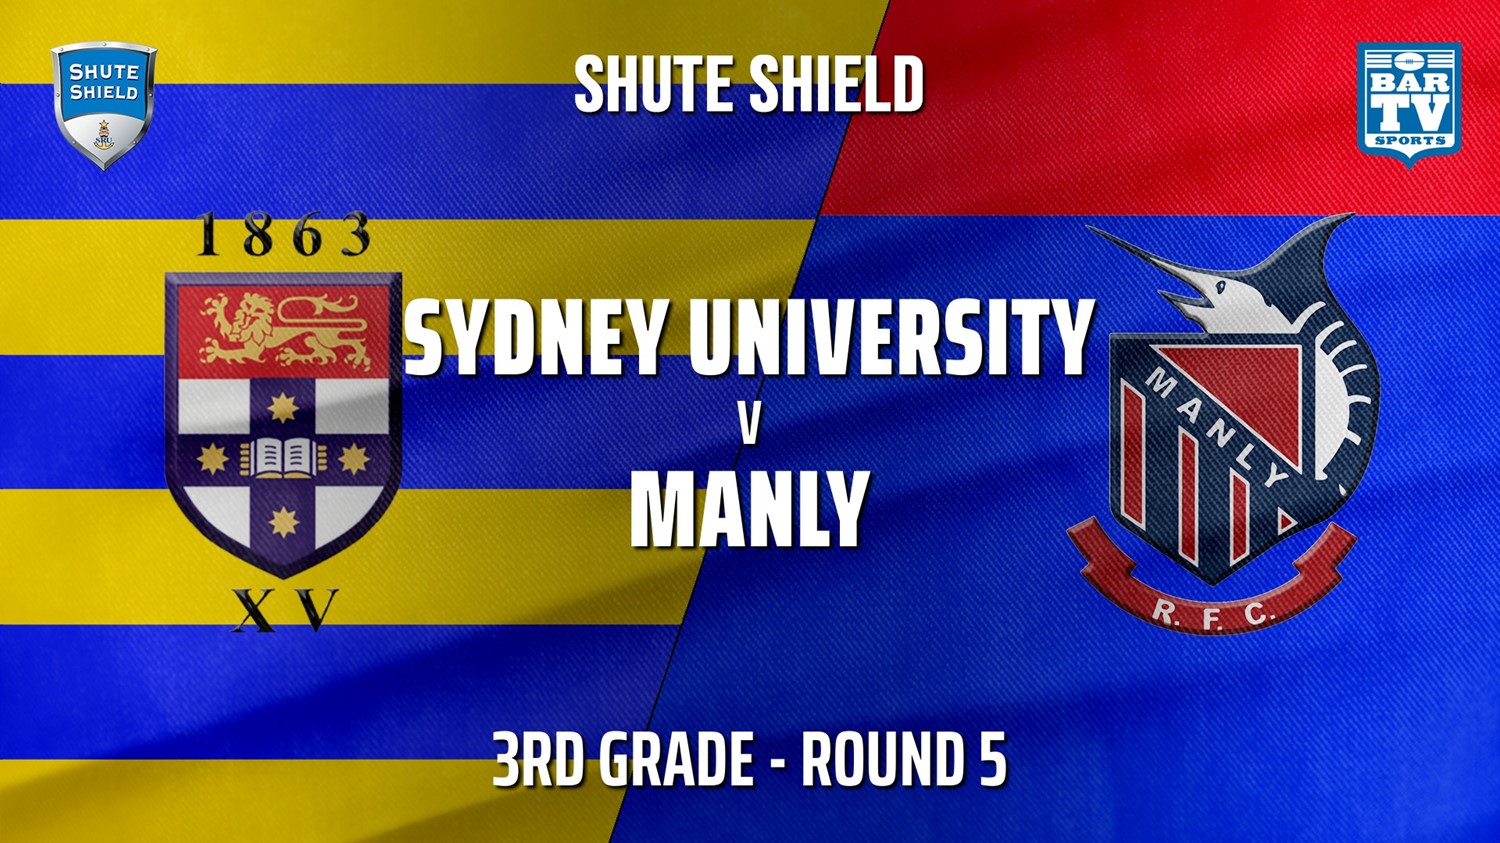 210508-Shute Shield Round 5 - 3rd Grade - Sydney University v Manly Slate Image